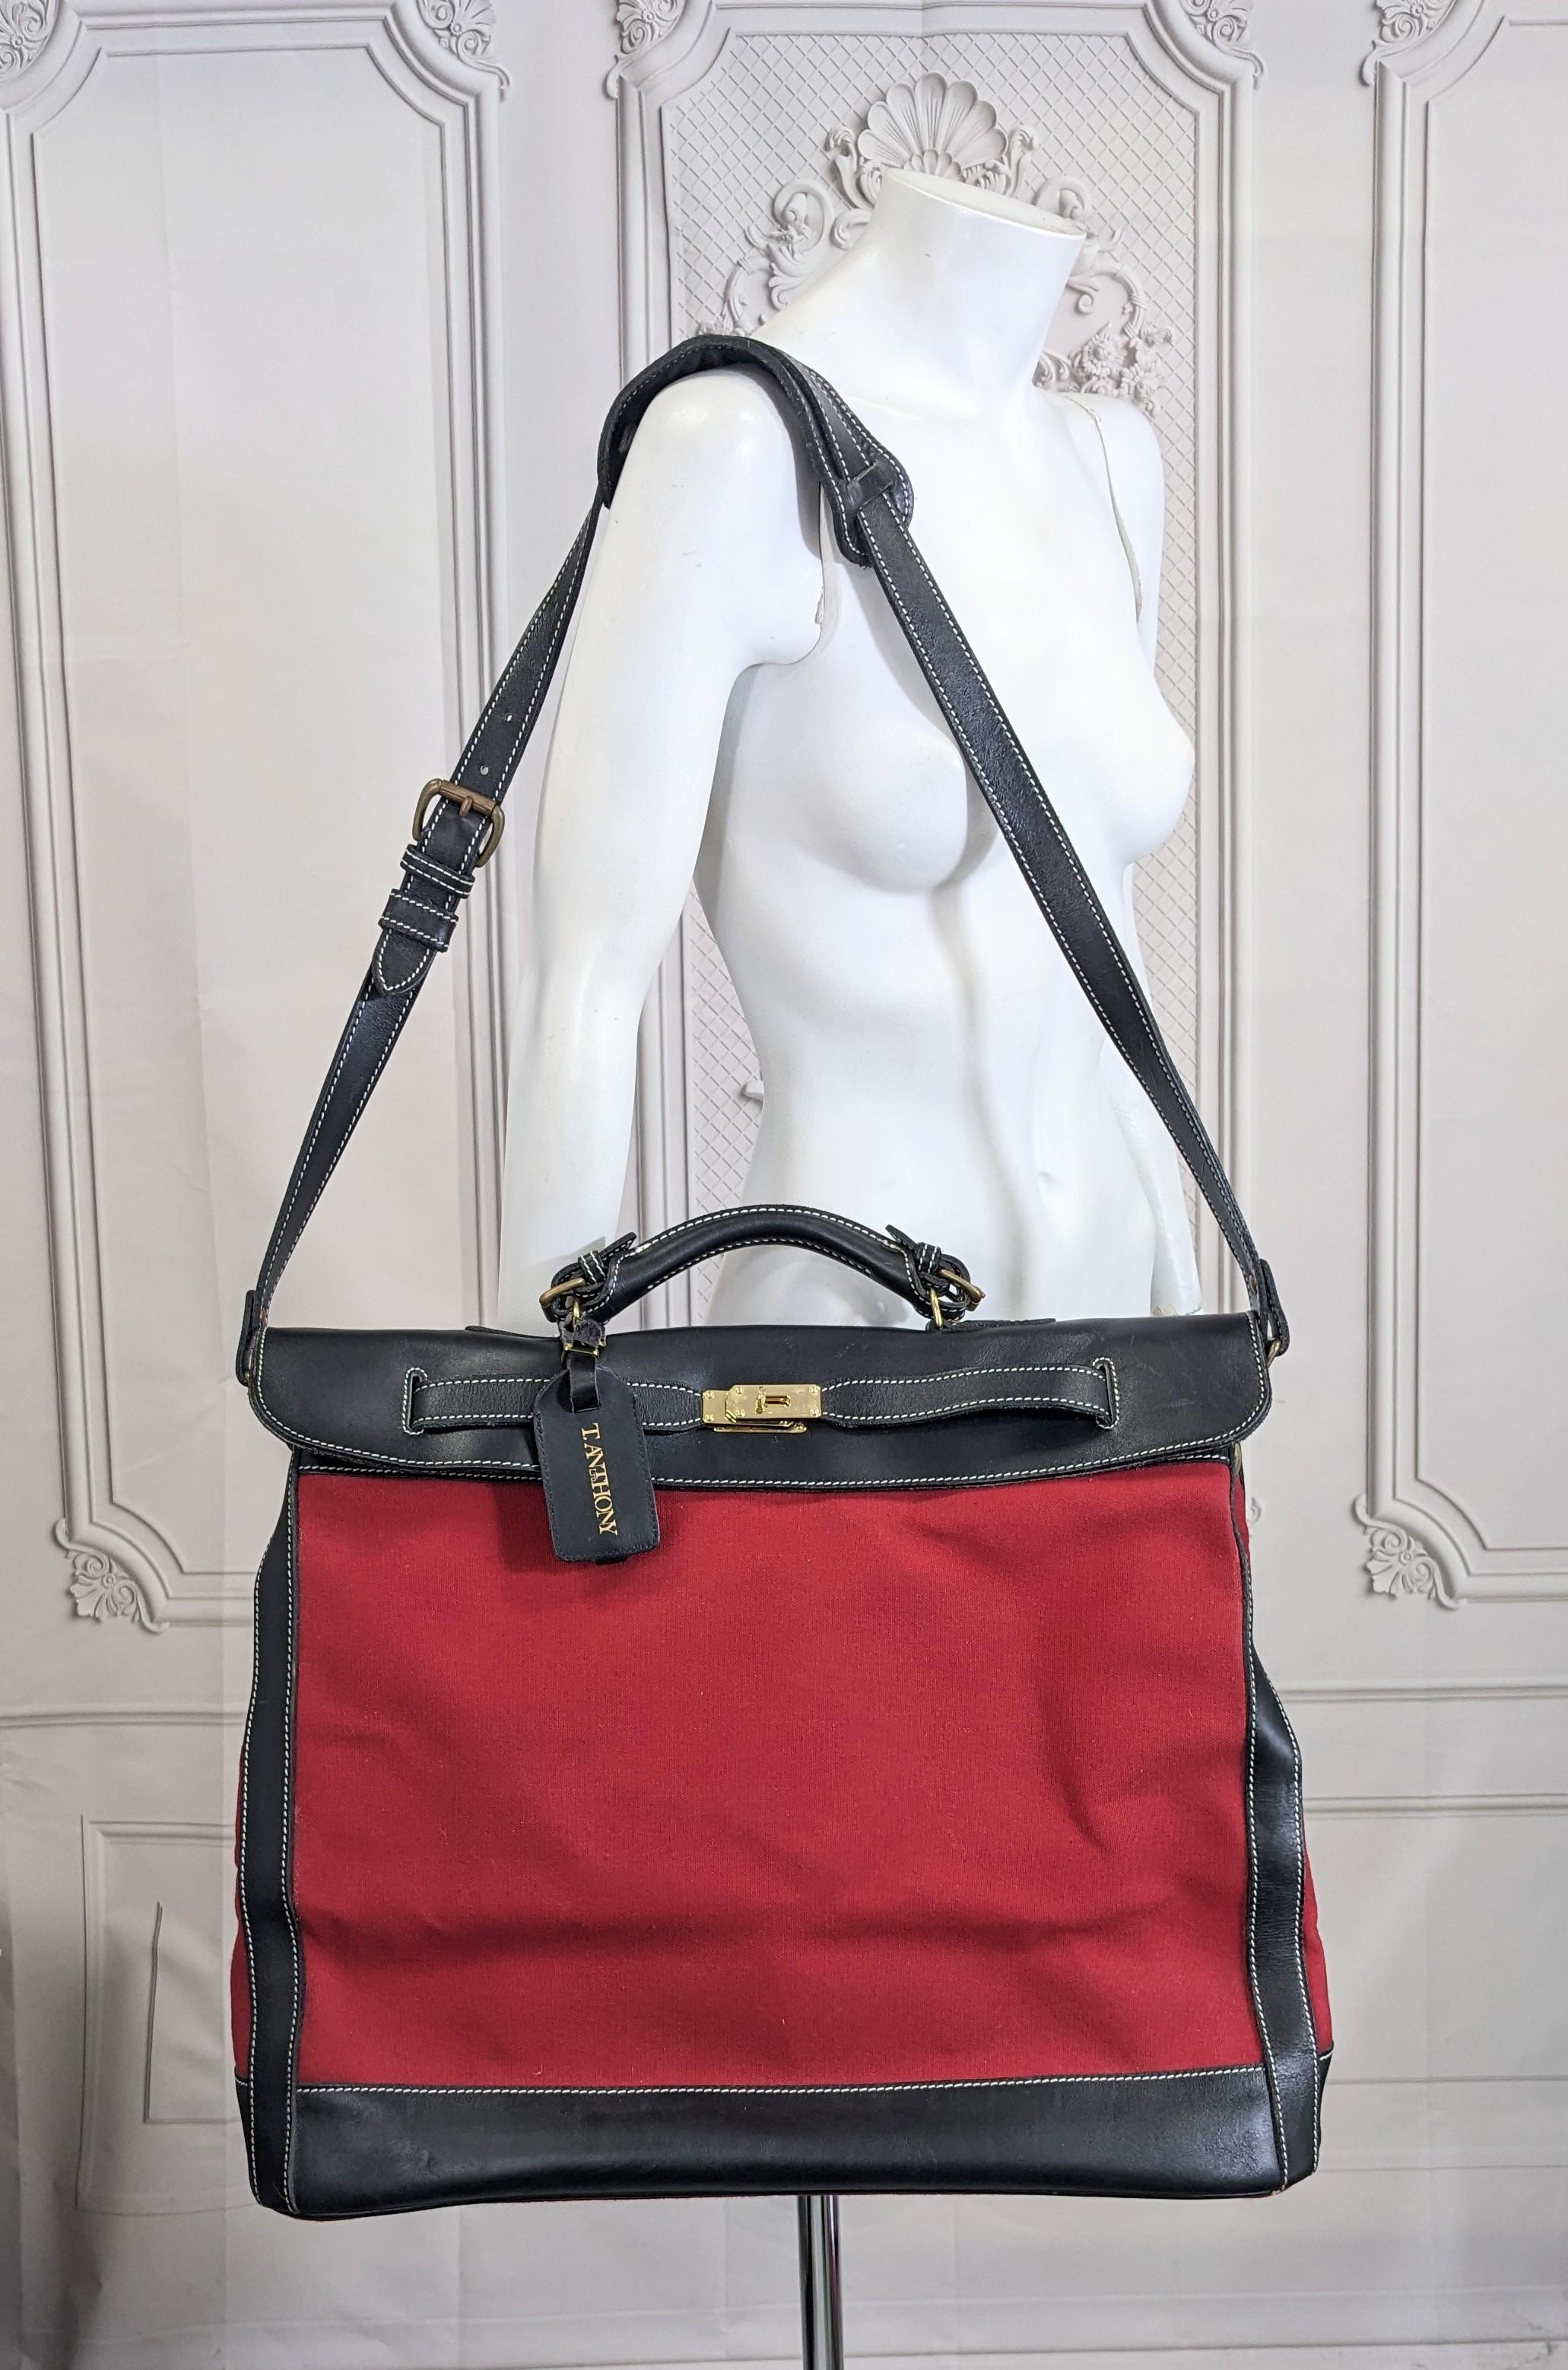 Sac de voyage en cuir et toile de style Hermès par AT&T dans les années 1990. Une toile de coton rouge épaisse associée à du cuir de veau noir dans ce sac de voyage surdimensionné de style Birkin.
Veuillez noter qu'il s'agit d'un sac de haute